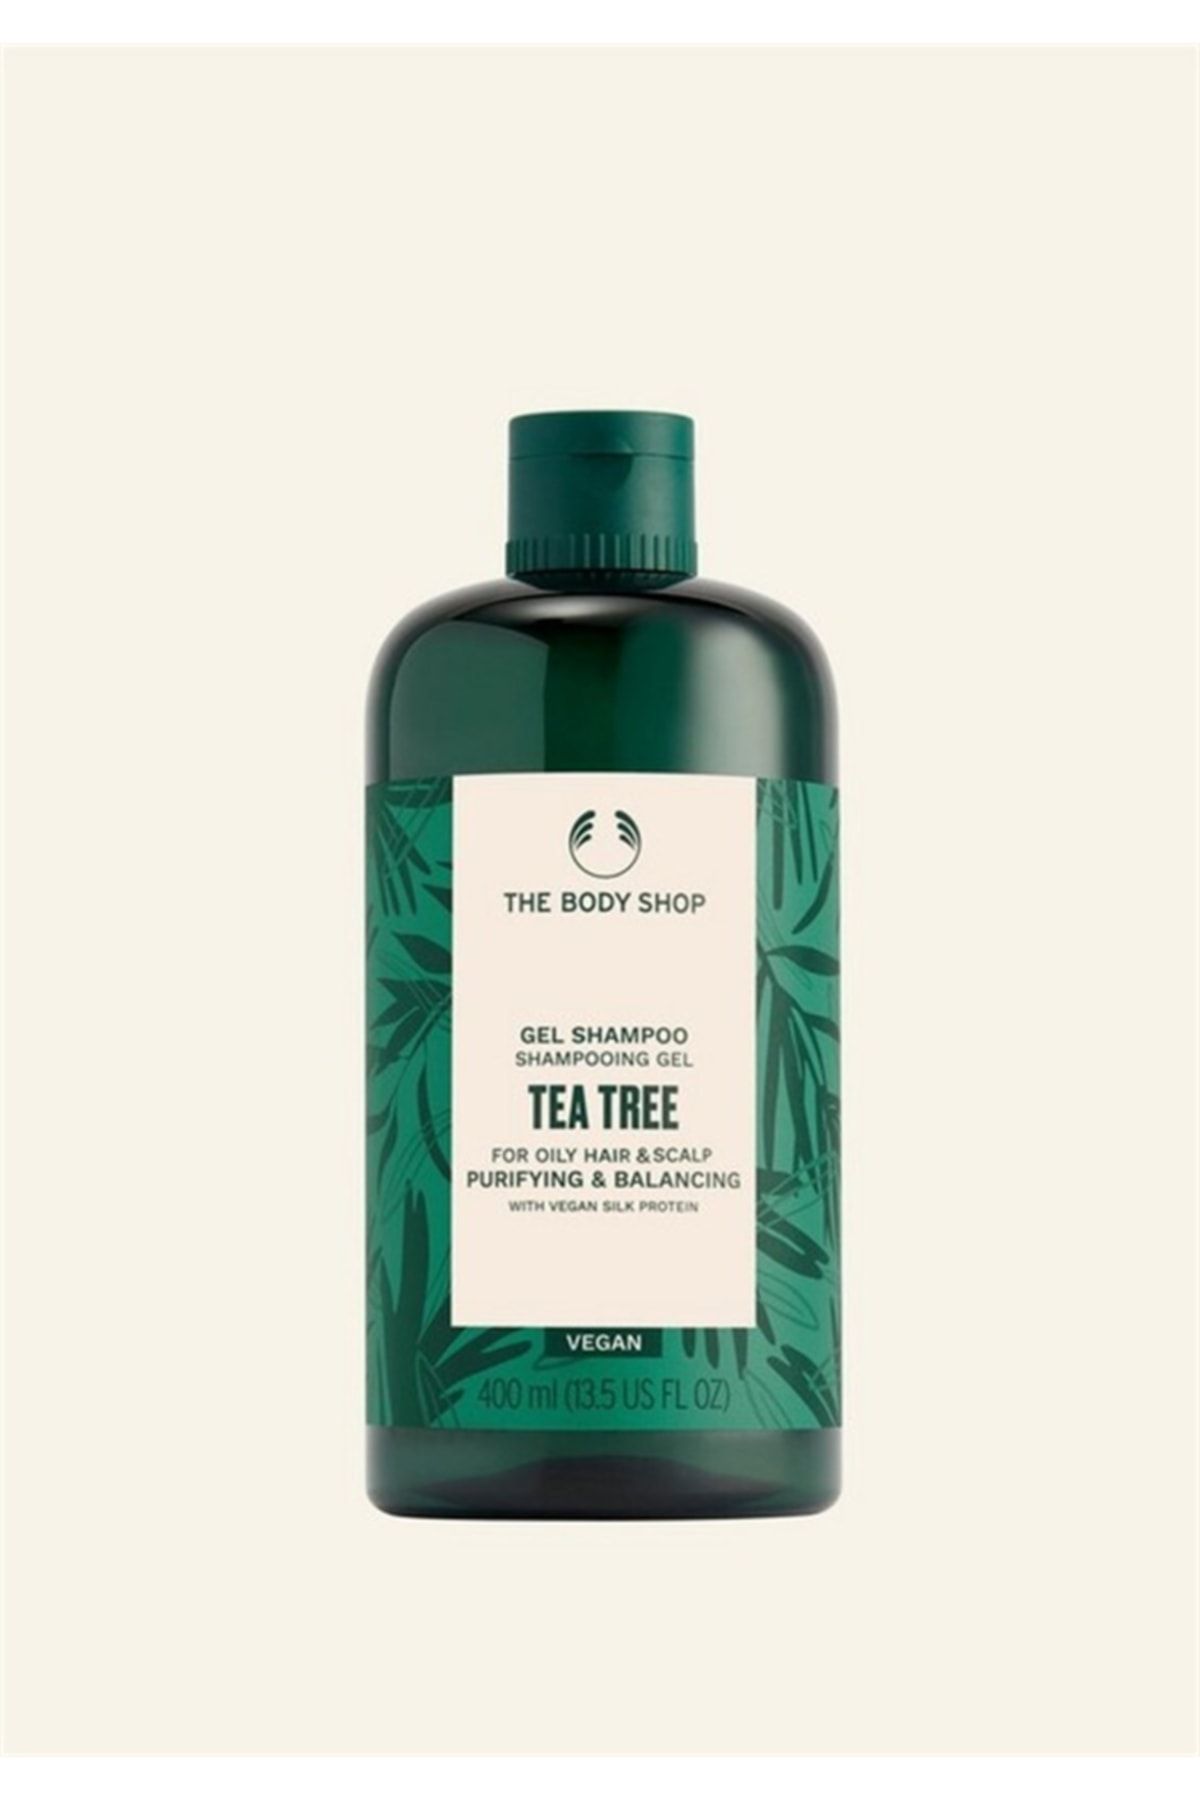 THE BODY SHOP Çay Ağacı Tea Tree Yağlı Saçlara Özel Arındırıcı Ve Dengeleyici Jel Şampuan 400 ml